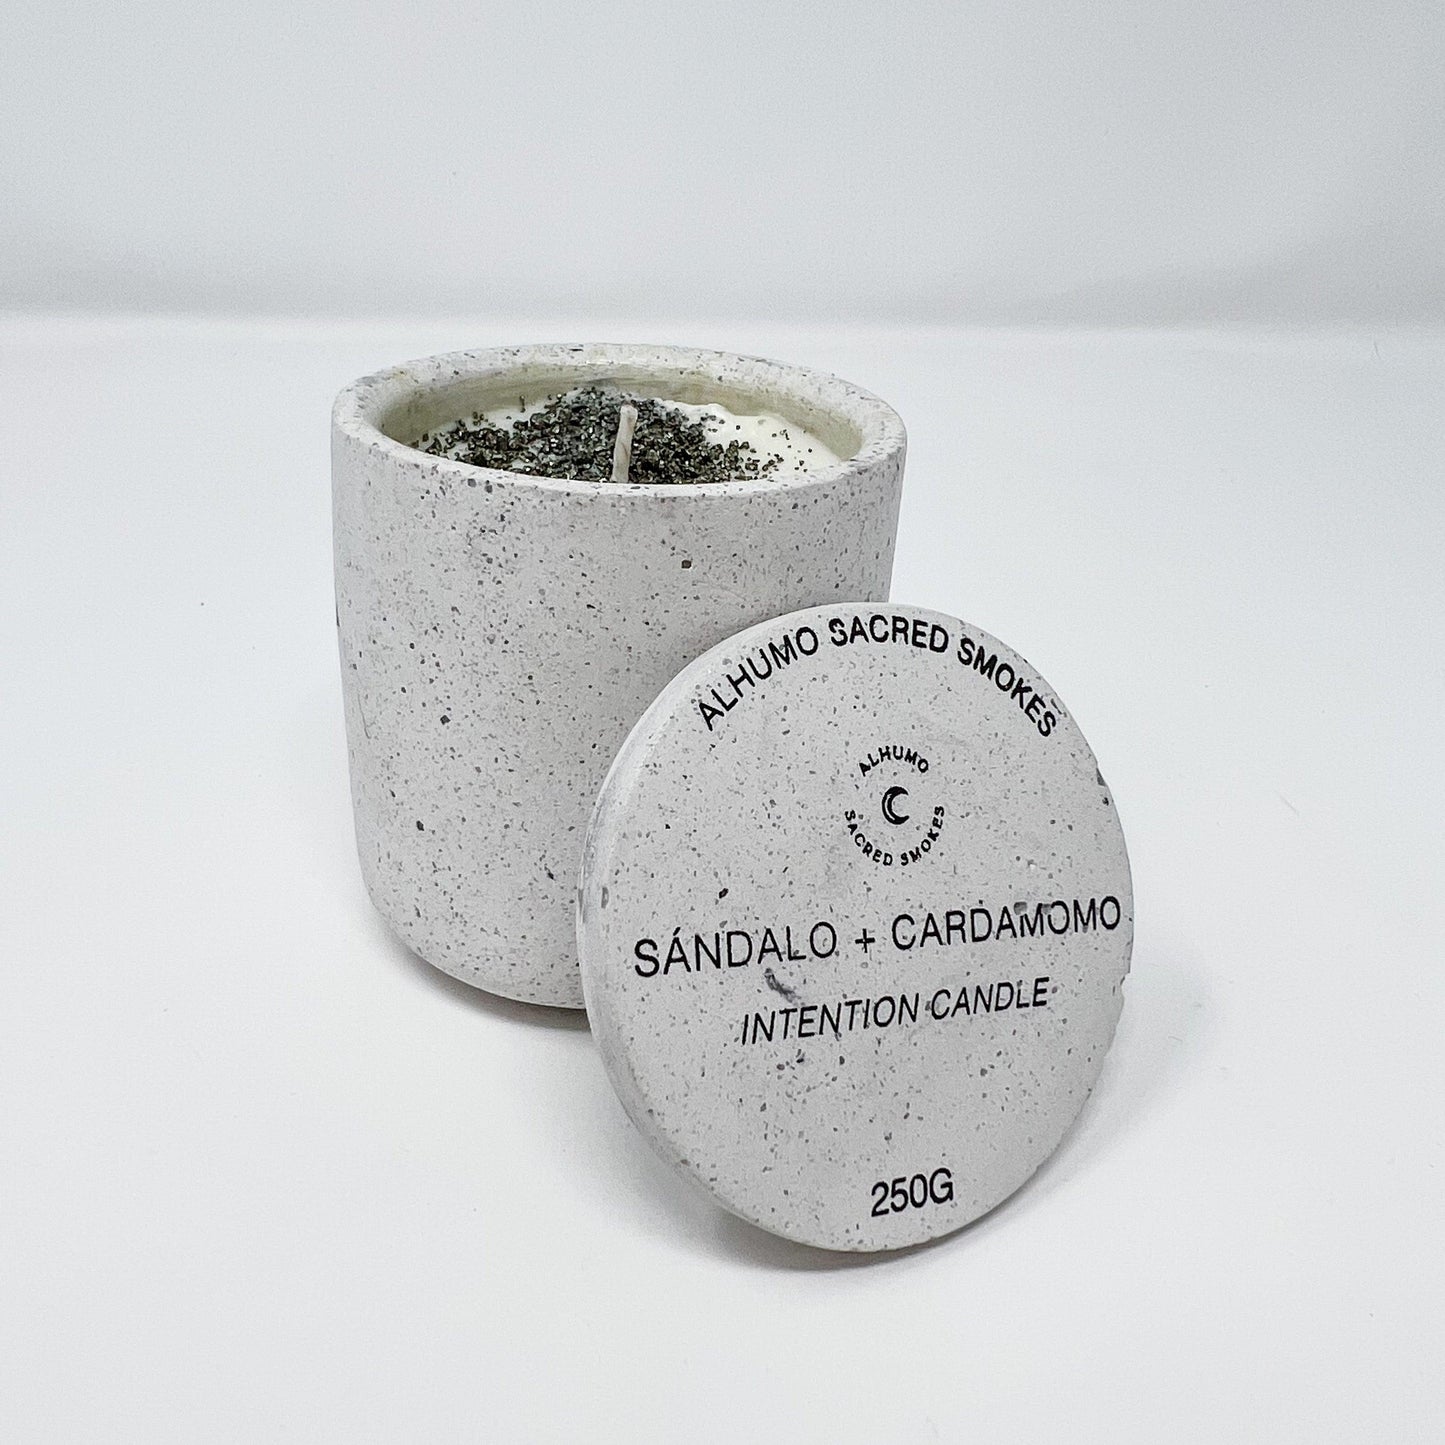 Bundle de Velas - Palo Santo + Linaloe y Sándalo + Cardamomo - Alhumo Sacred Smokes